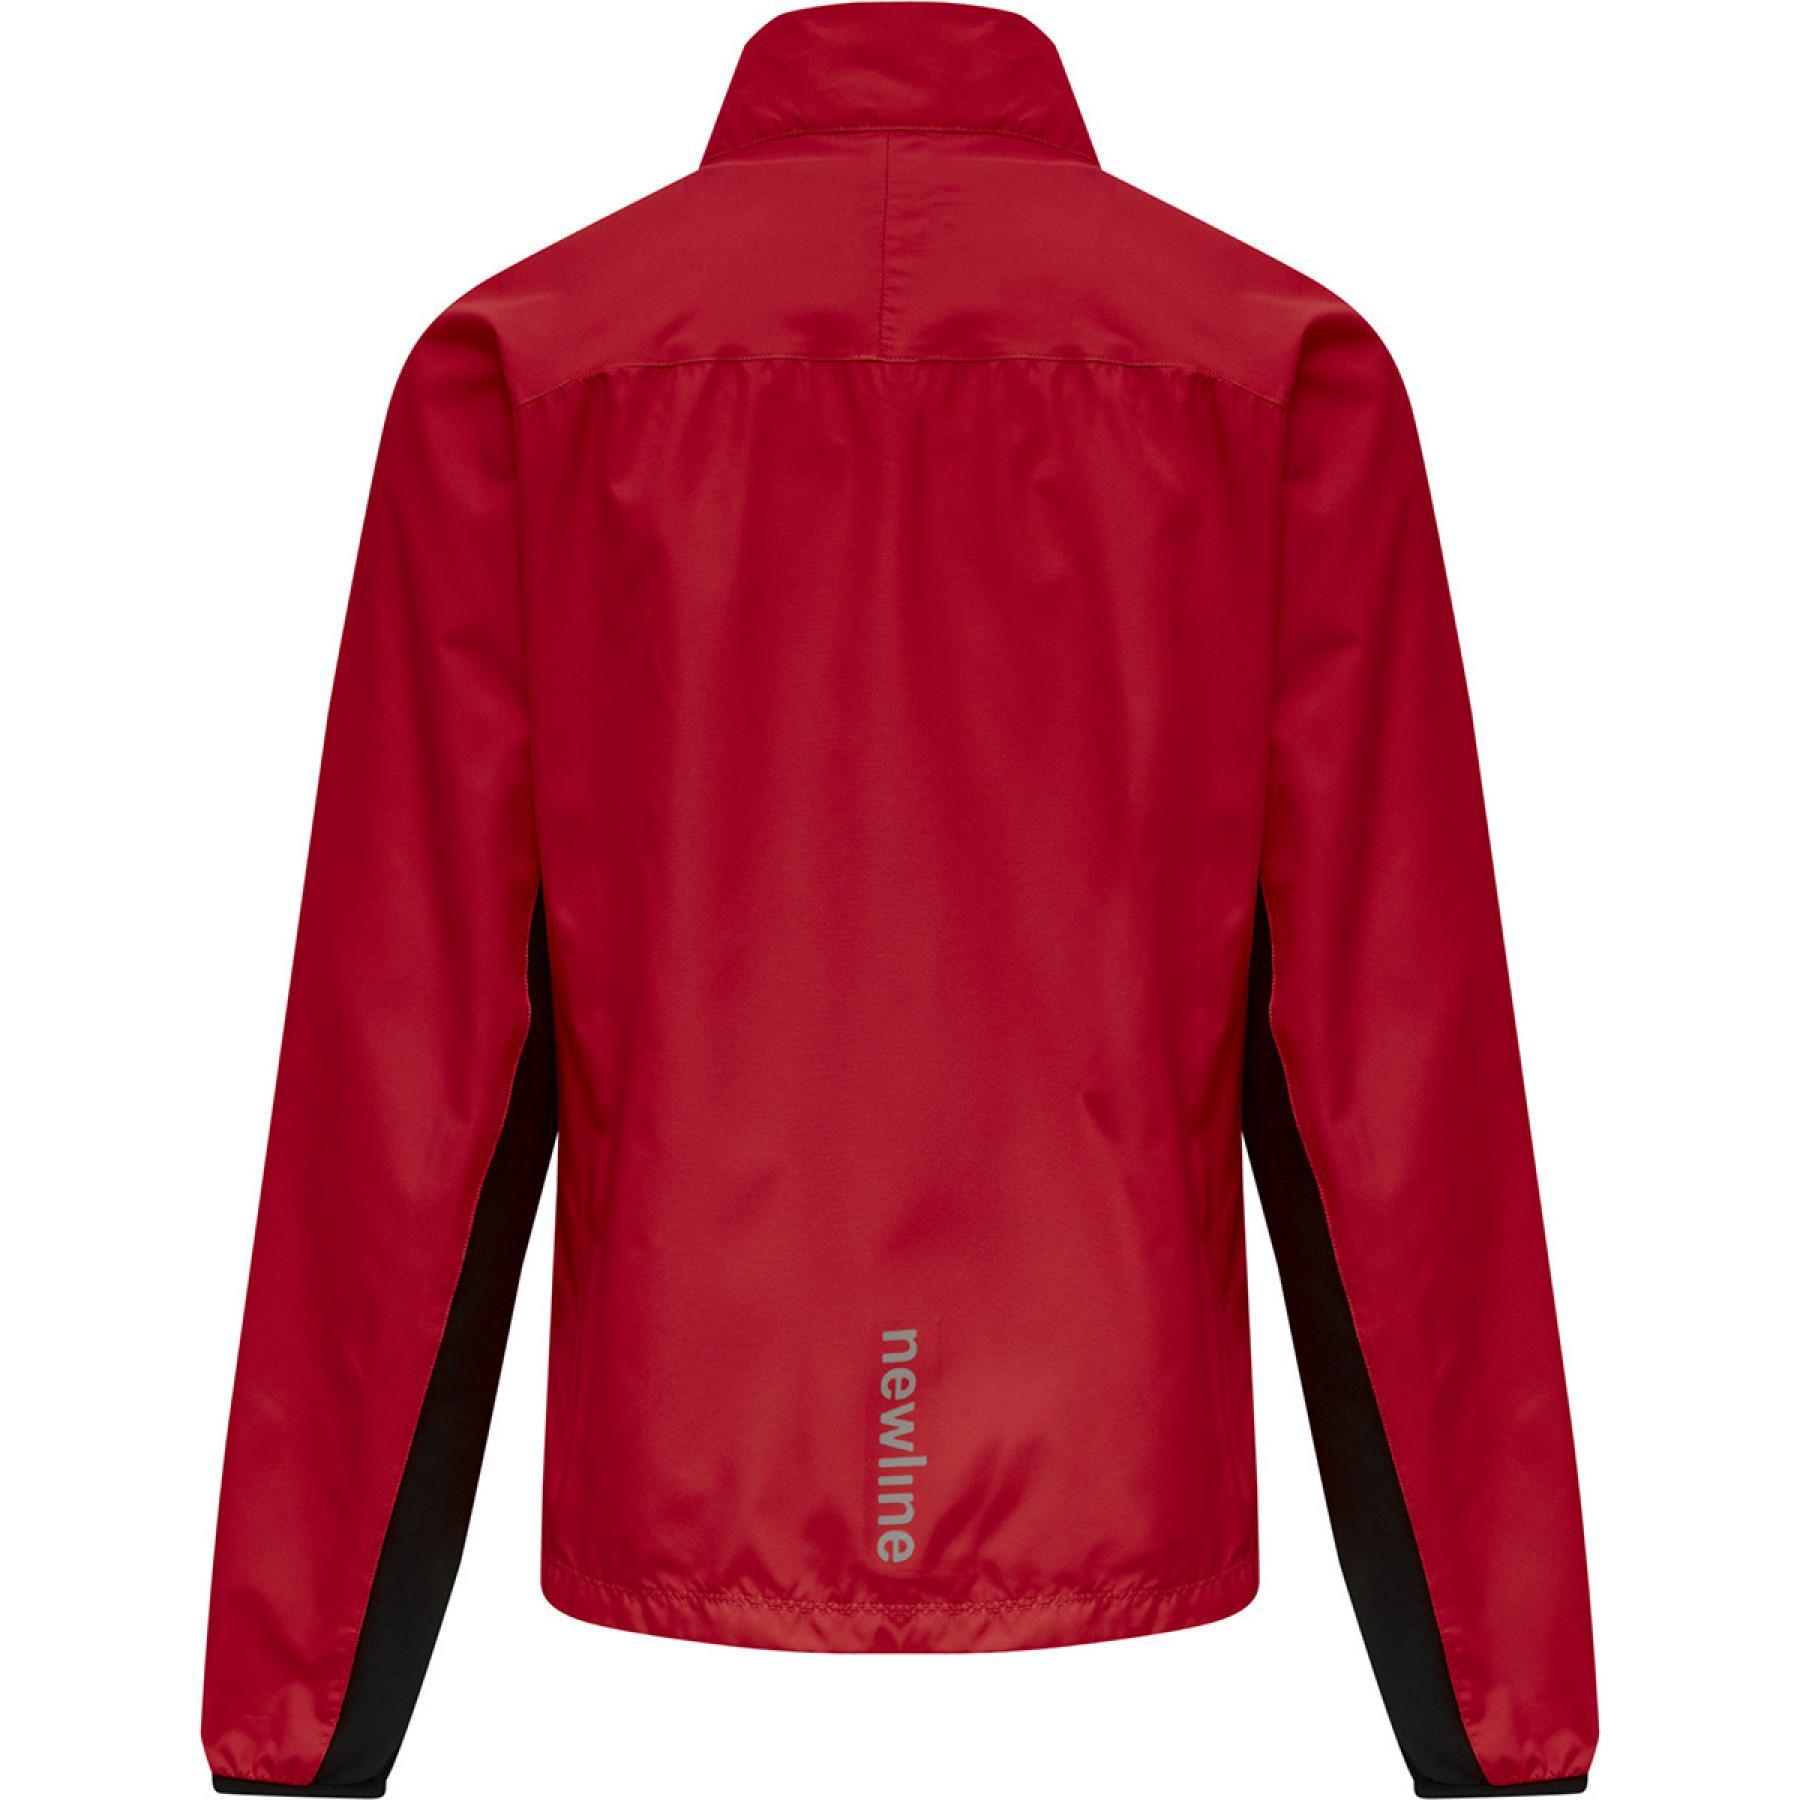 Women's jacket Newline core